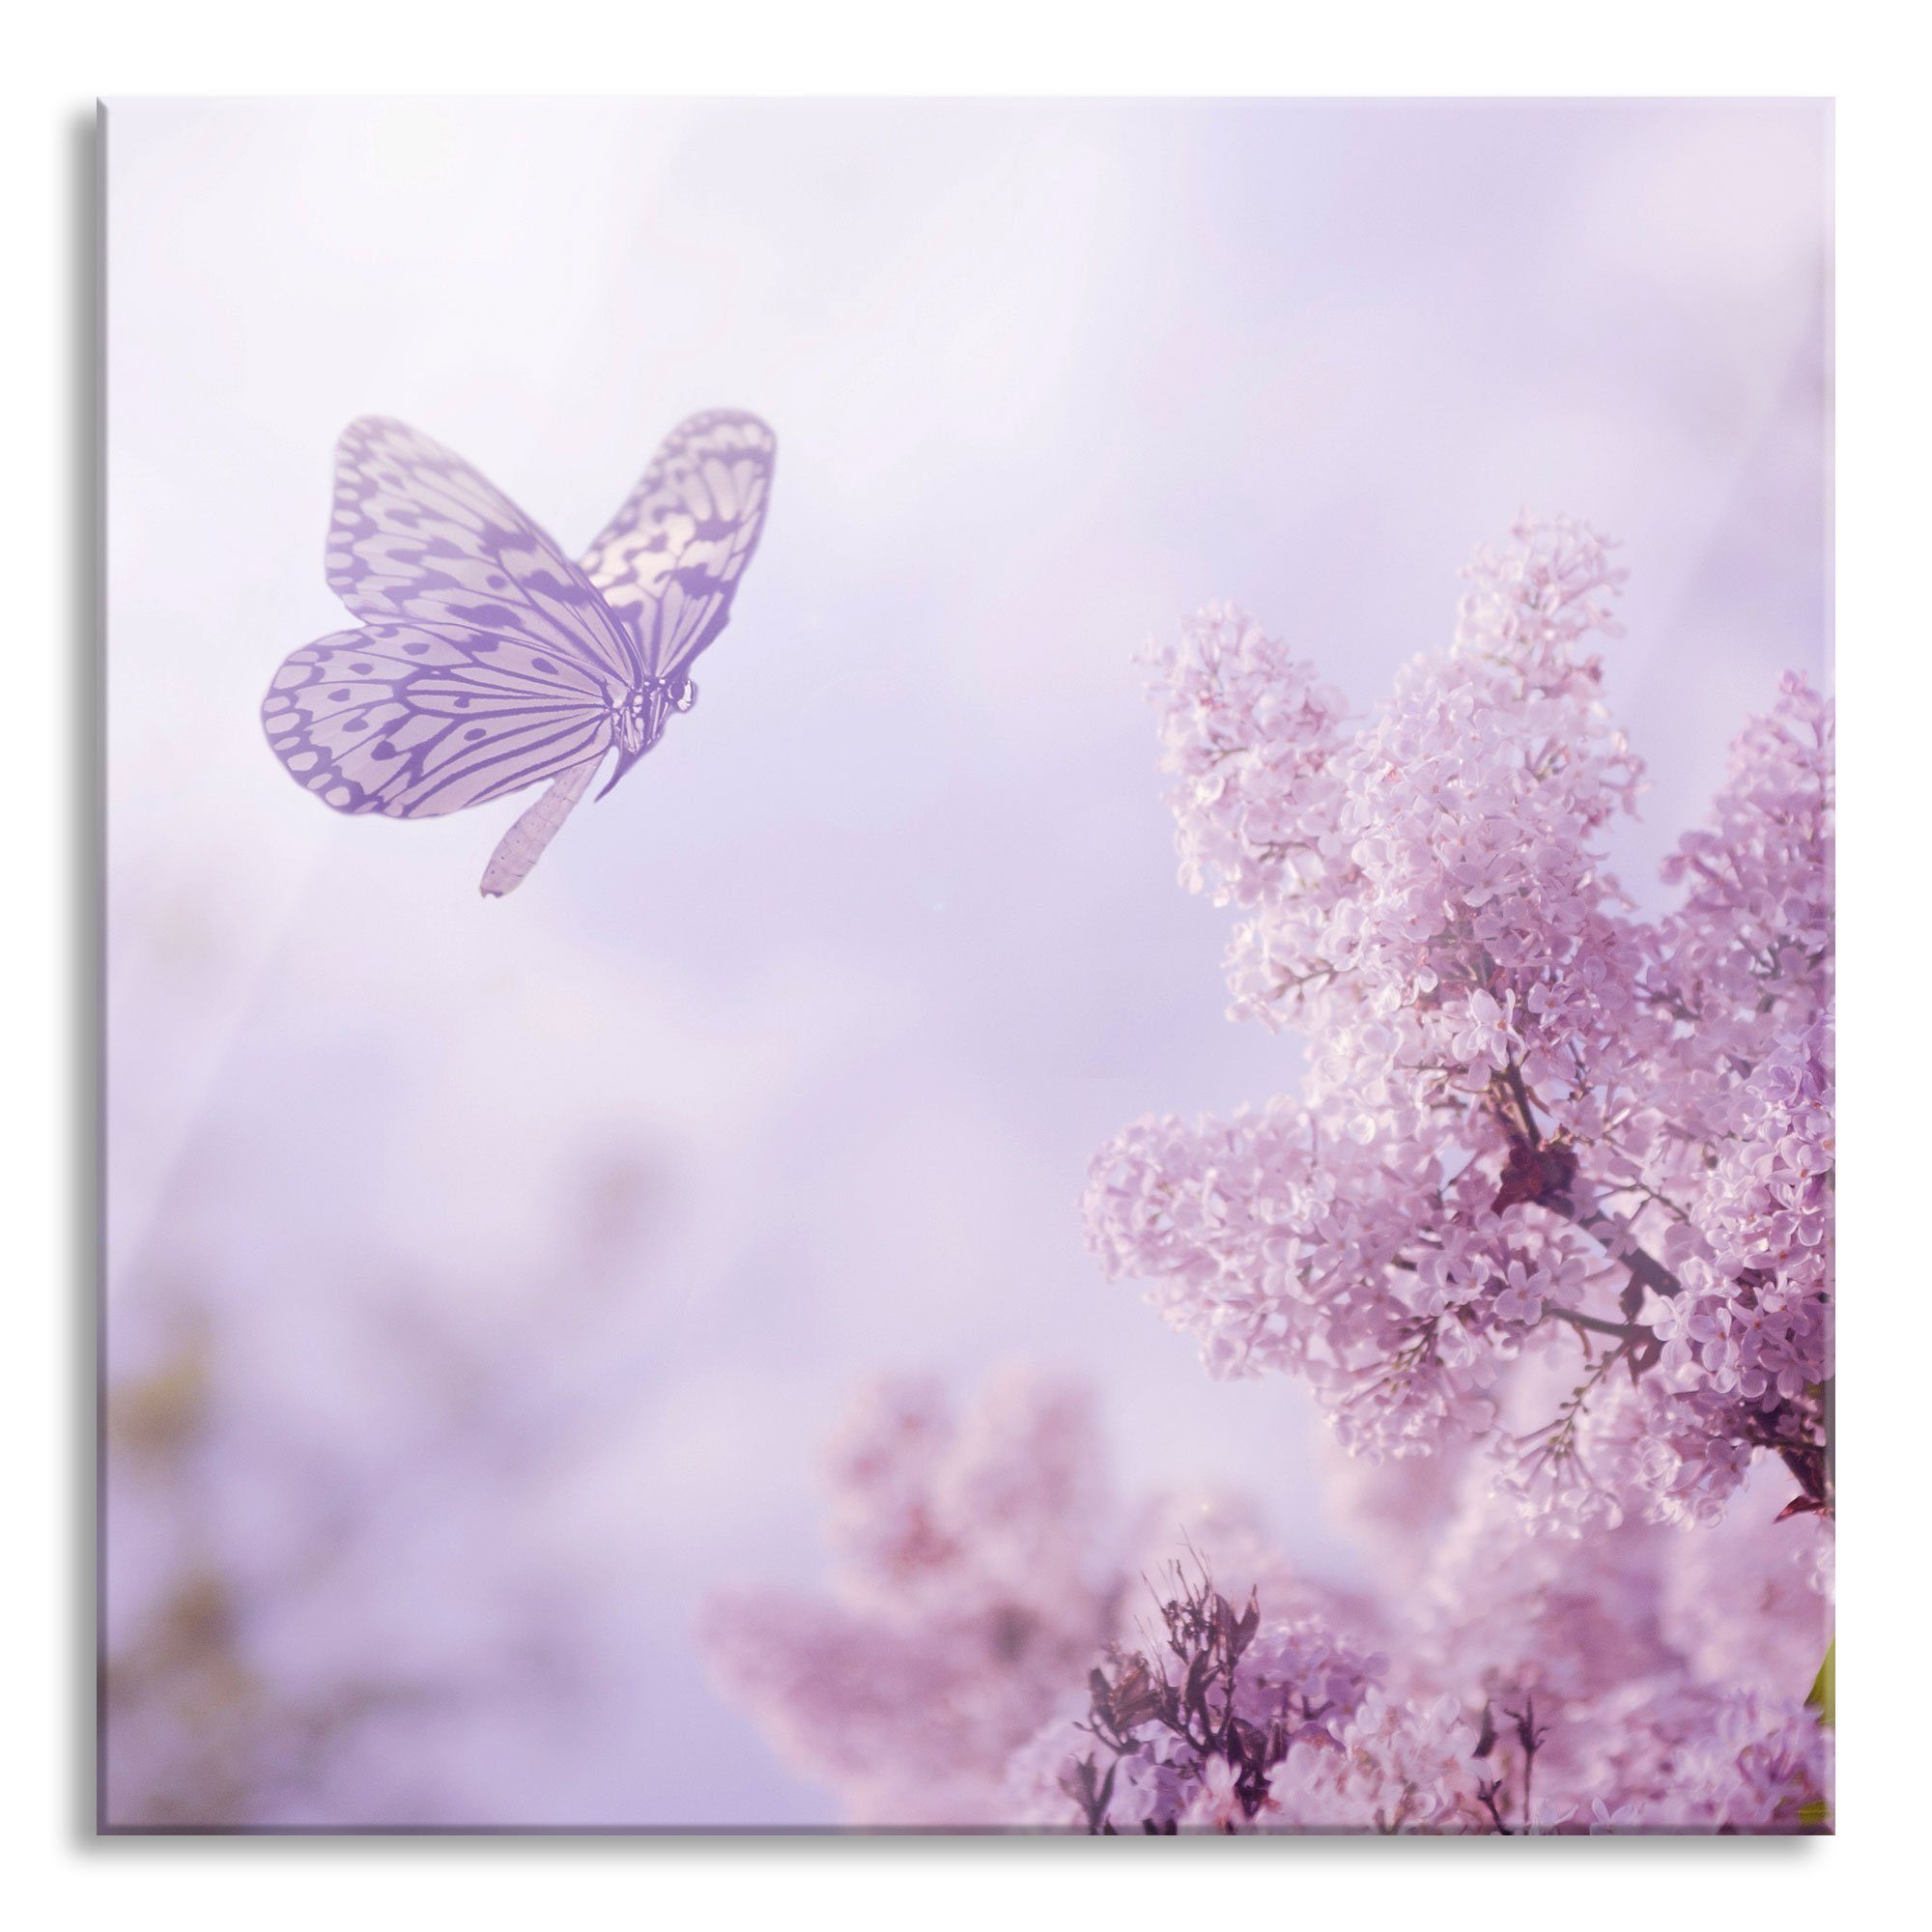 Pixxprint Glasbild Schmetterling Kirschblüten, (1 inkl. Aufhängungen Kirschblüten Glasbild Schmetterling und St), Abstandshalter aus Echtglas